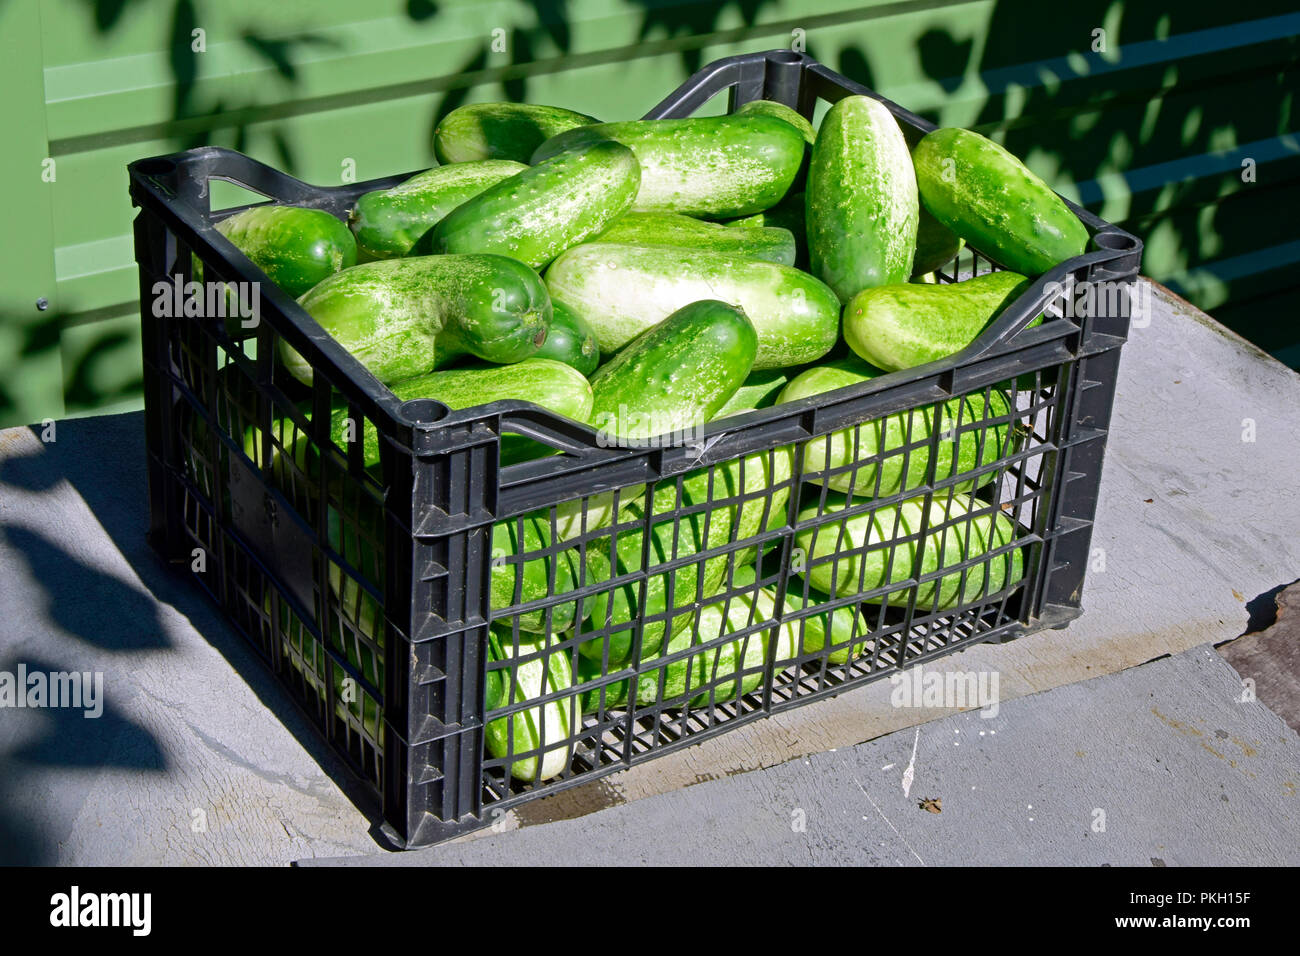 Une affaire pleine de blanc-vert fraîchement cueillies, fruits de concombre en plein soleil Banque D'Images